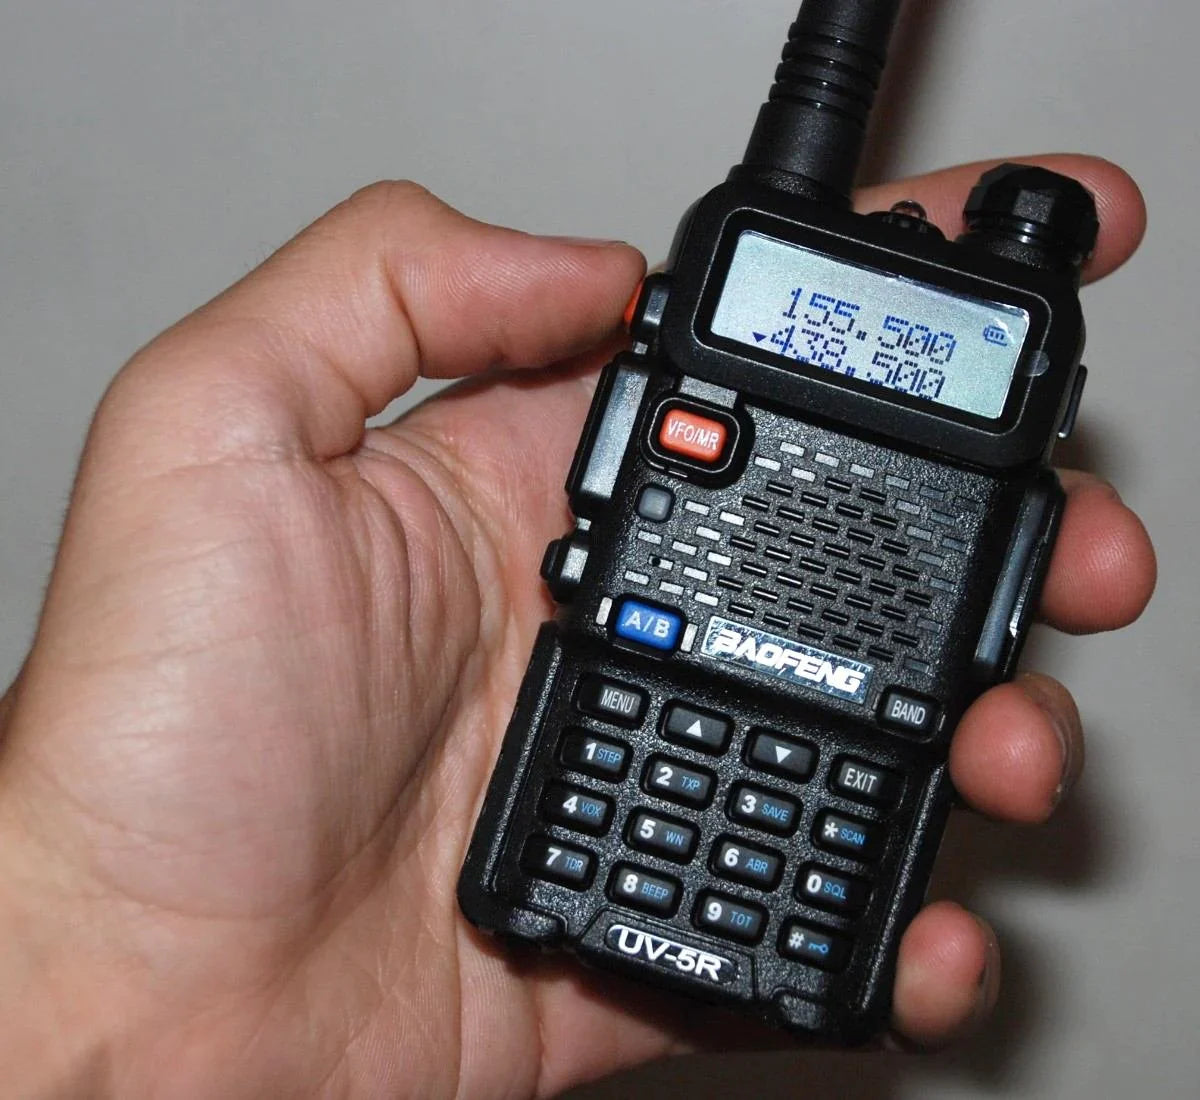 Baofeng uv5r Dual Band Radio Stanica UV 5R